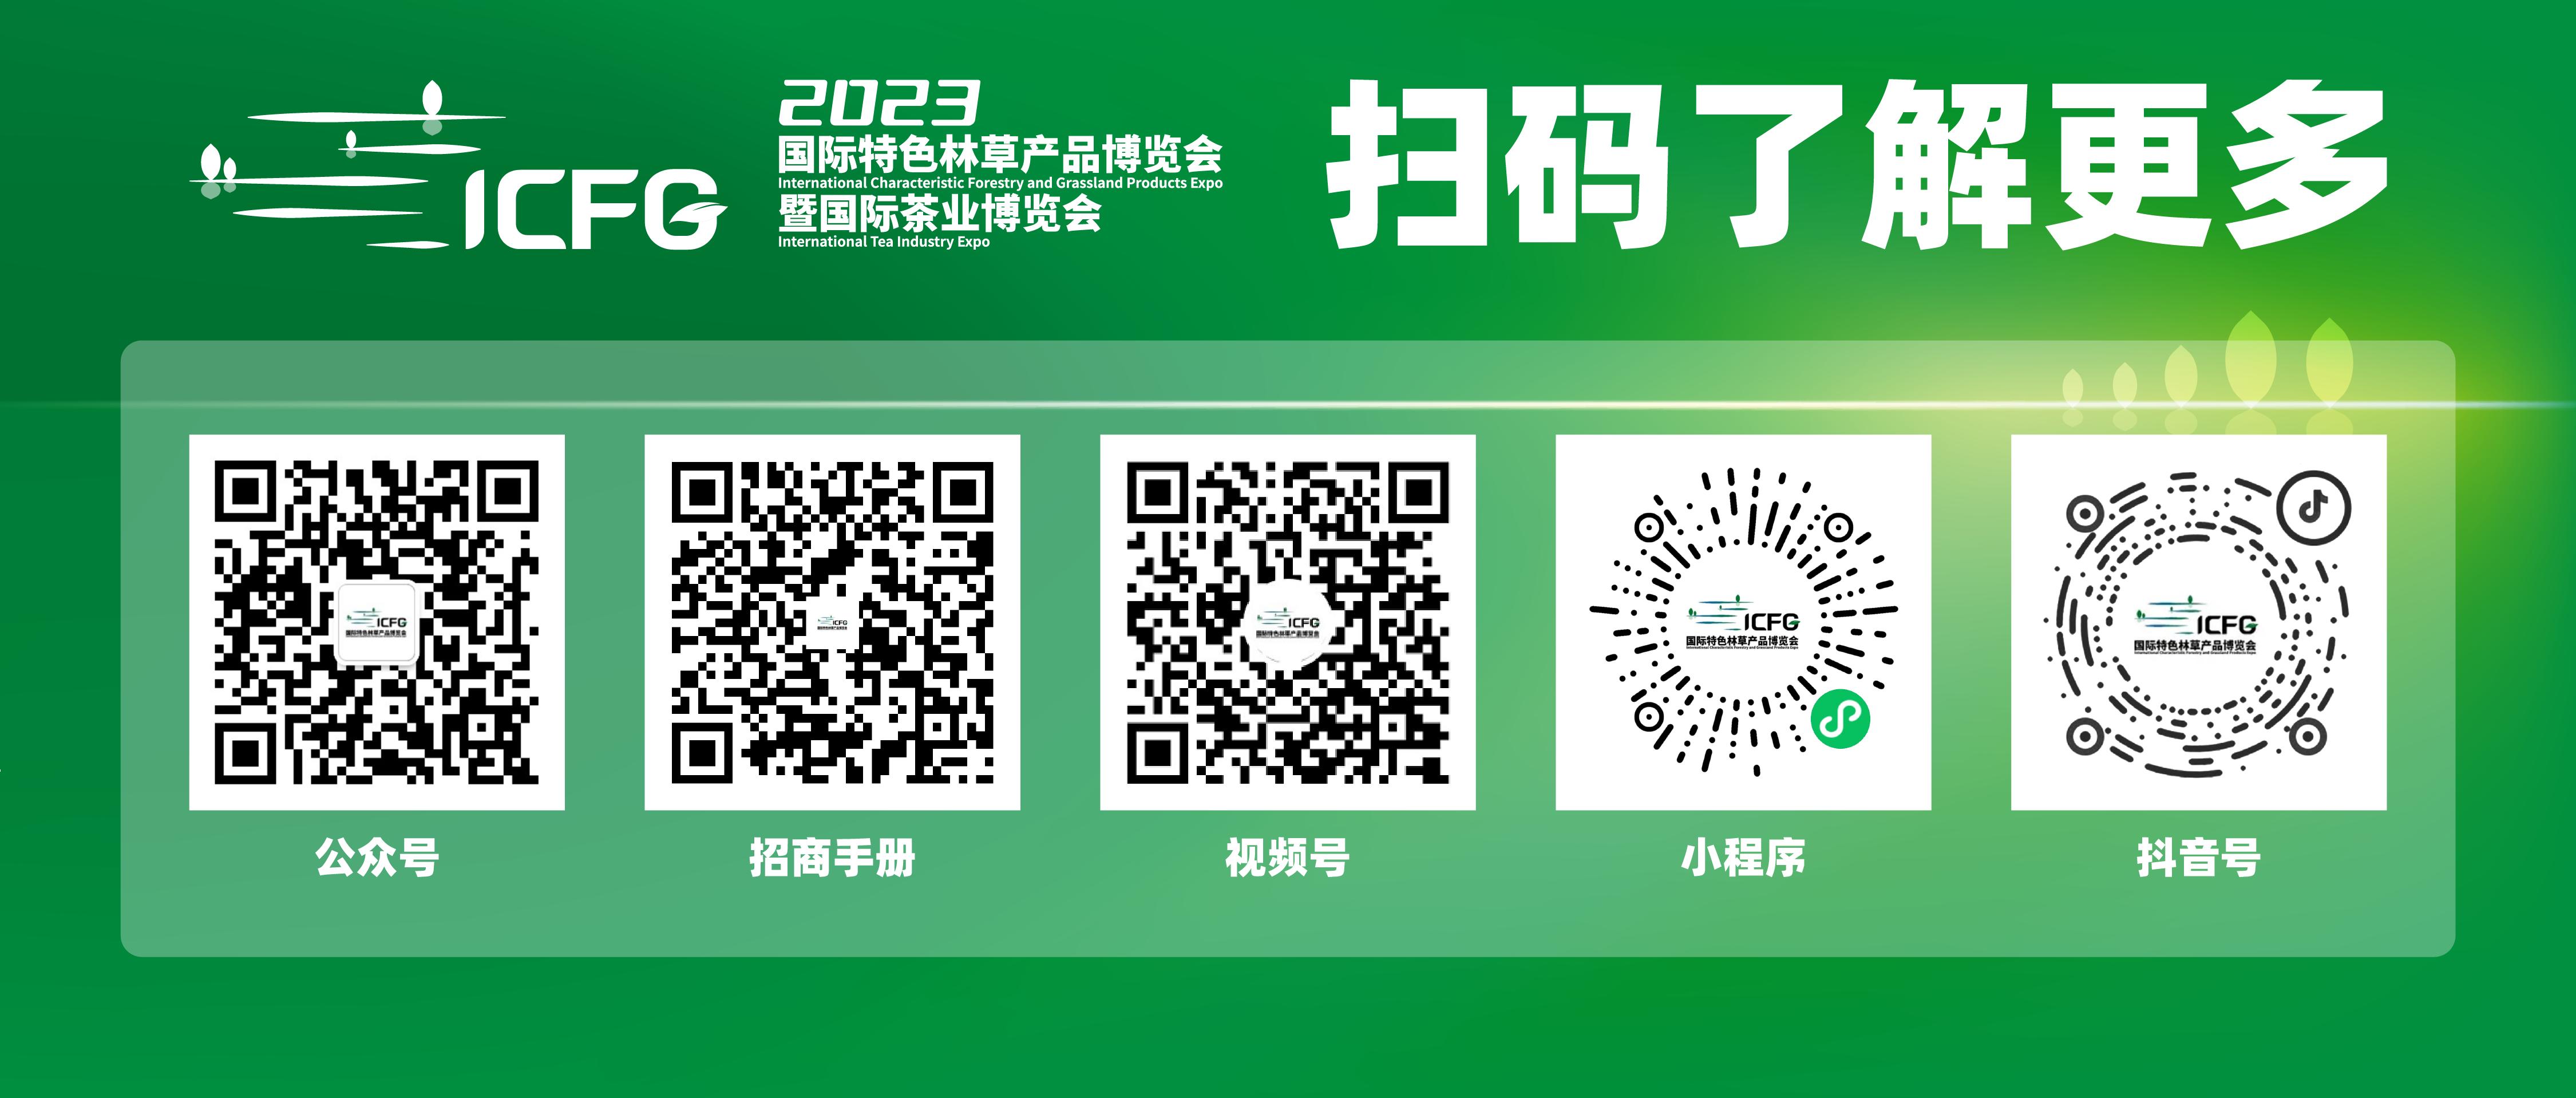 2023广州林博会 | 国际特色林草产品博览会暨国际茶业博览会将于6月在广州举办